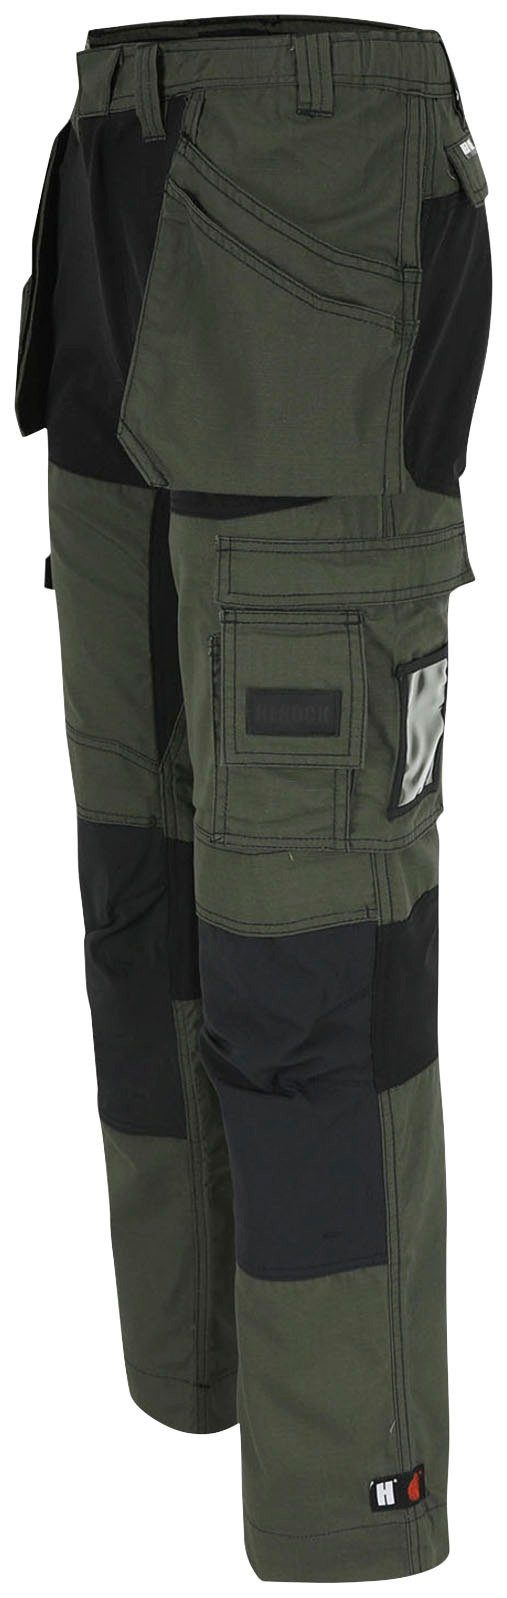 mit Herock Arbeitshose Hose khaki 4-Wege-Stretch-Teilen Multi-Pocket-Hose 2 Nageltaschen und festen Spector